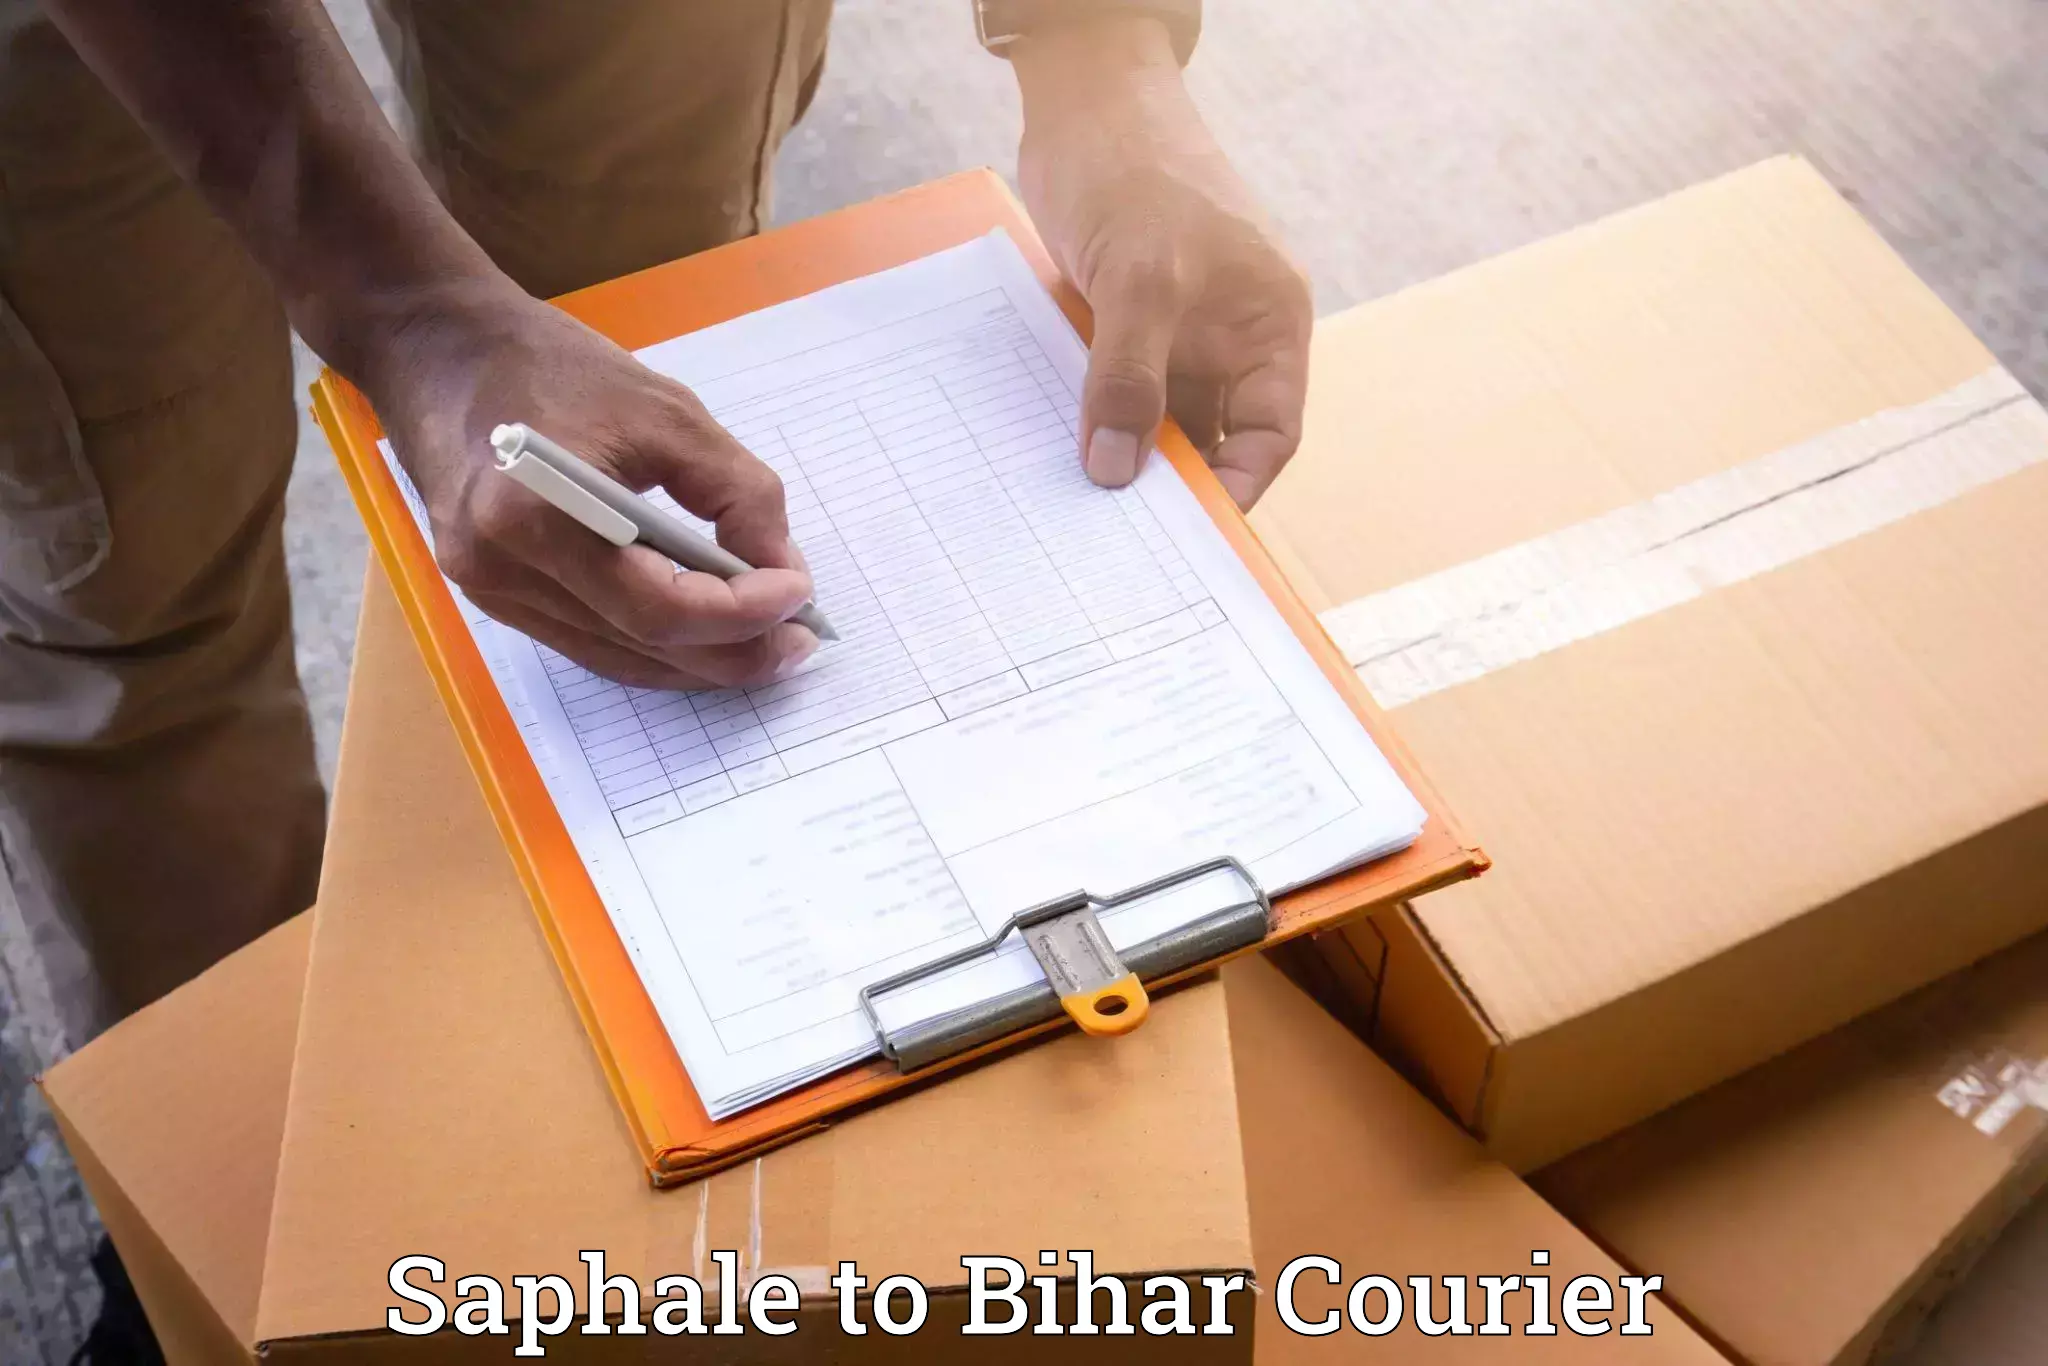 Furniture delivery service Saphale to Kanker Nabinagar